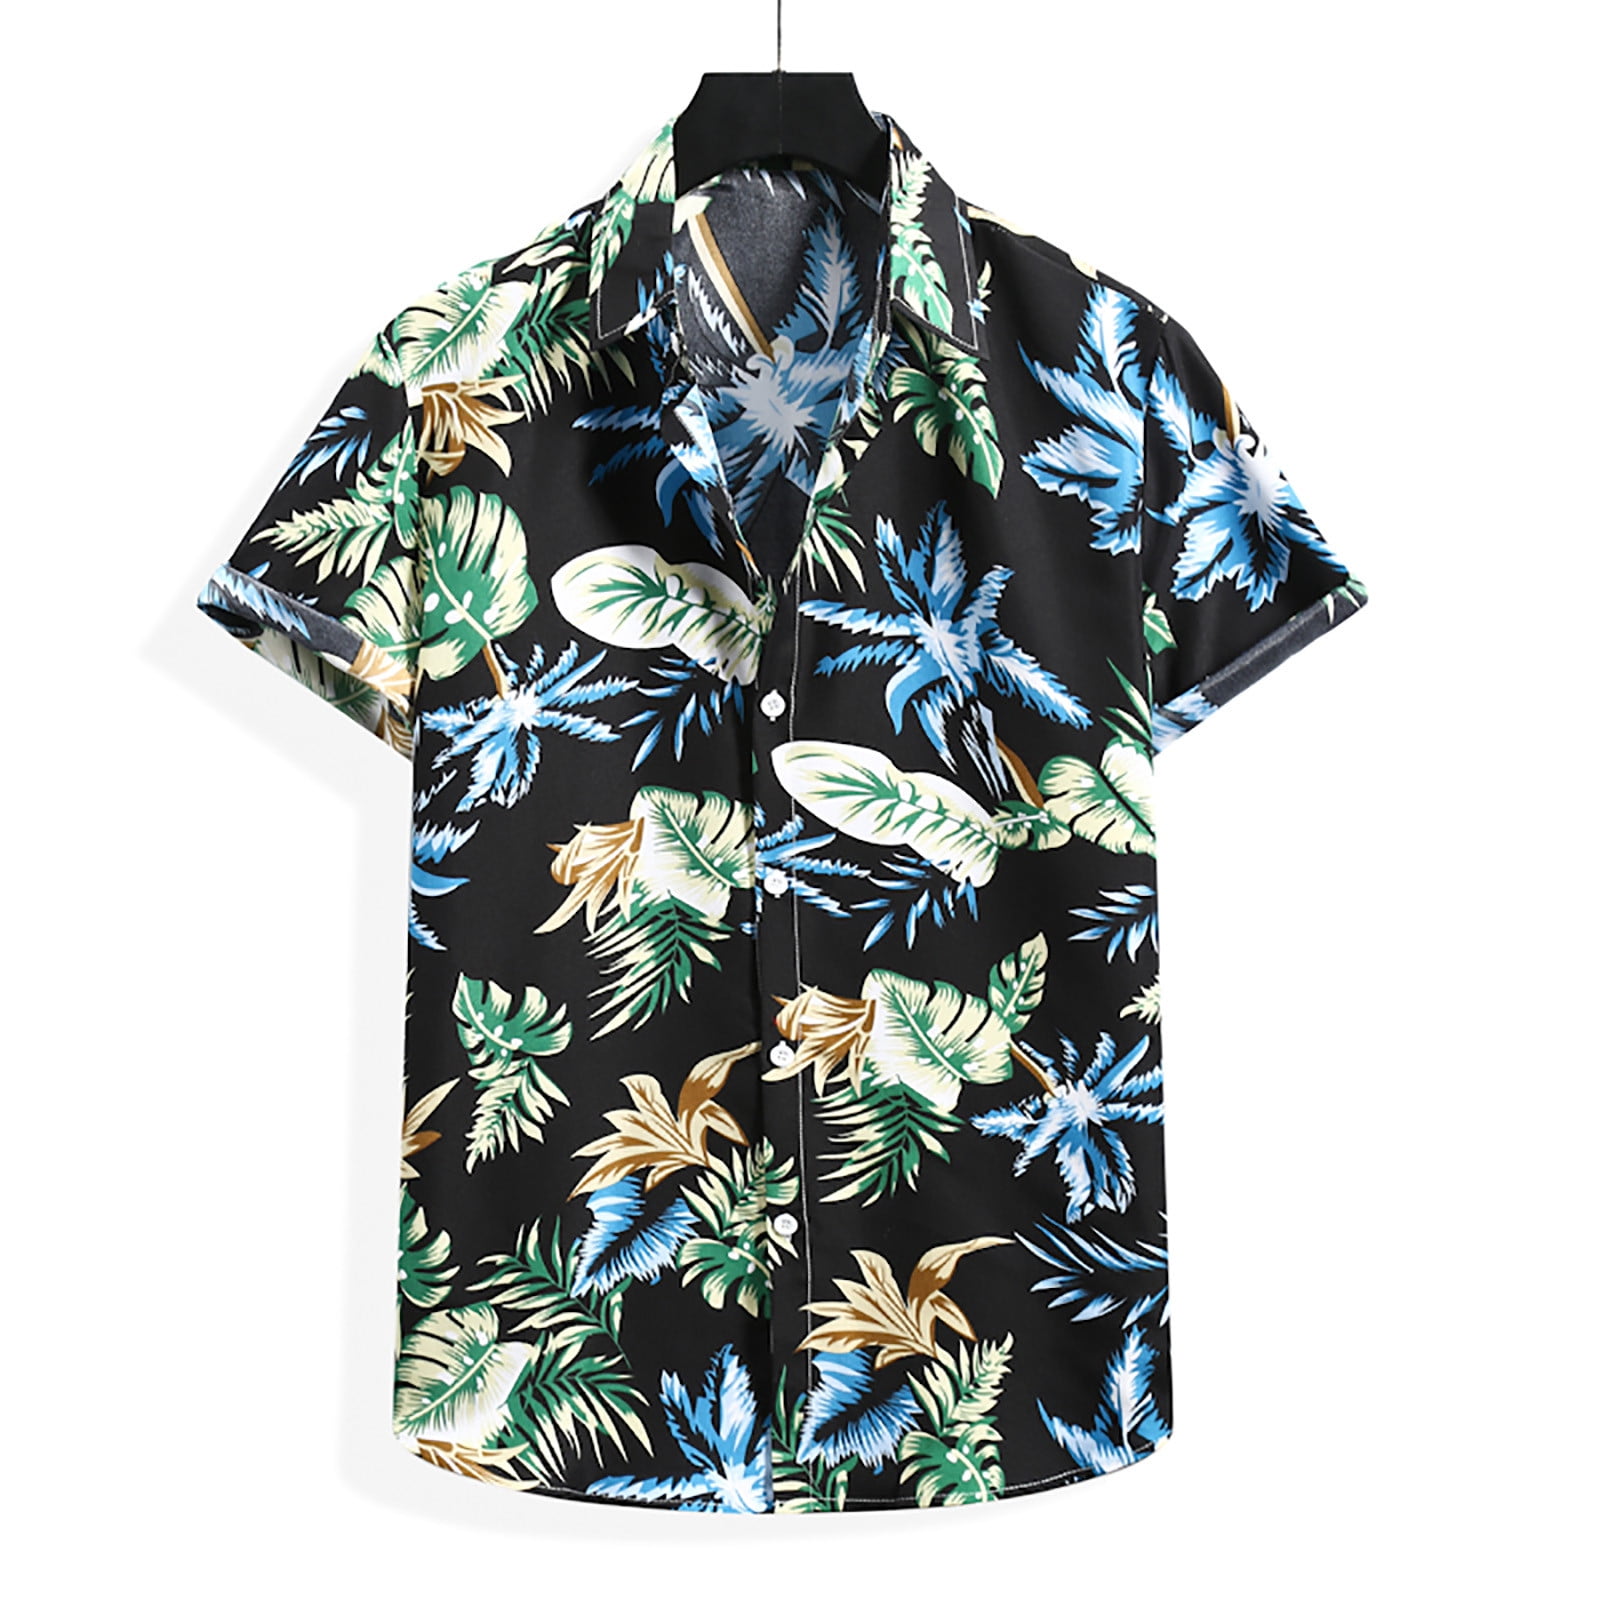 Ayolanni 100% Cotton Hawaiian Shirt Men Hawaiian Short Sleeve Beach ...